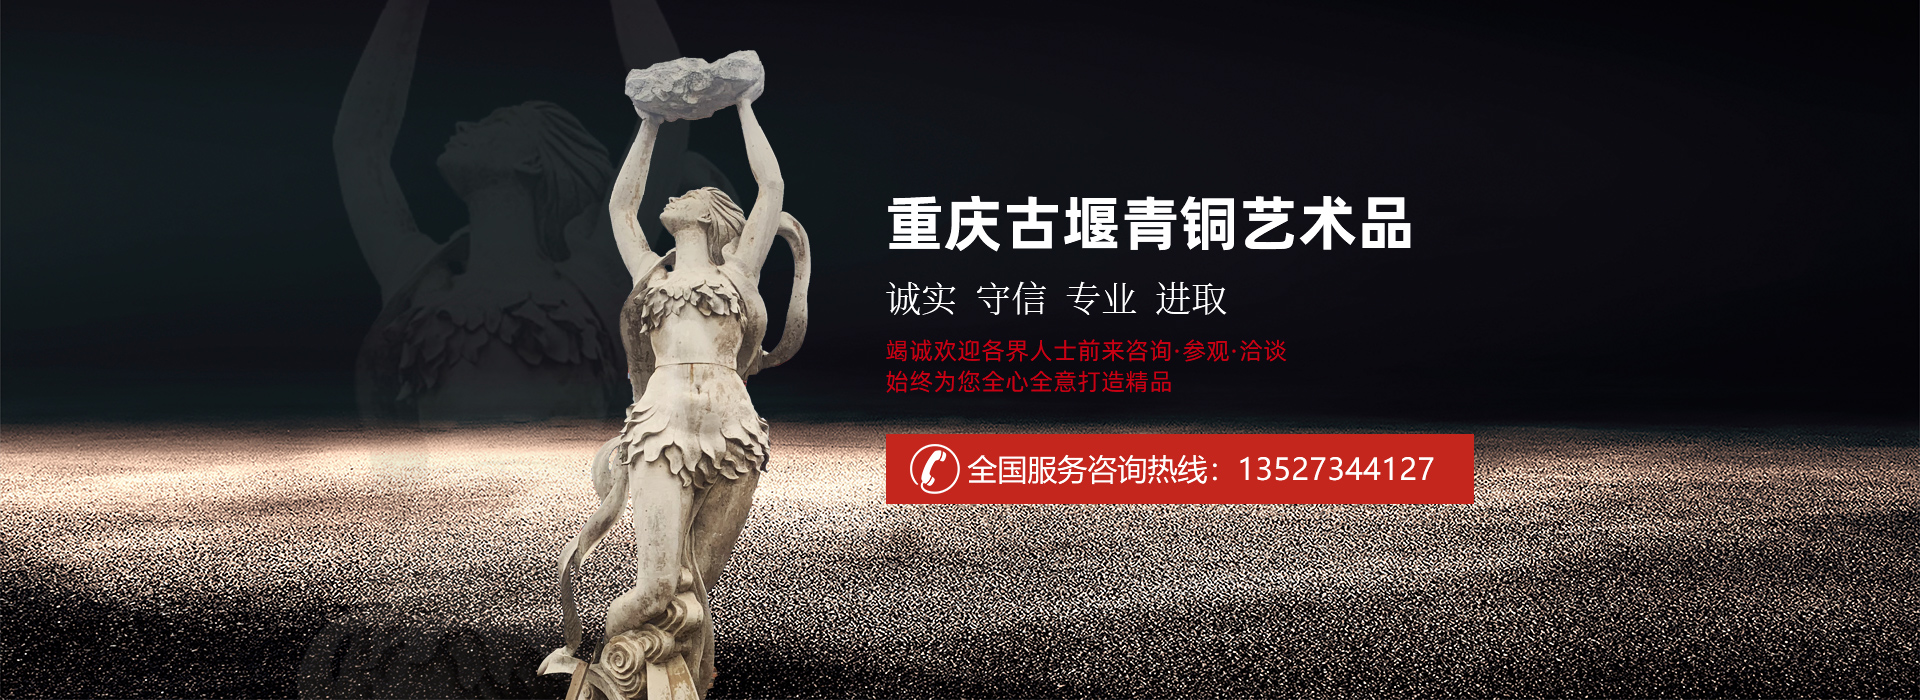 江西省雕塑公司_重庆铸铜雕塑哪里好-重庆古堰青铜艺术品有限公司